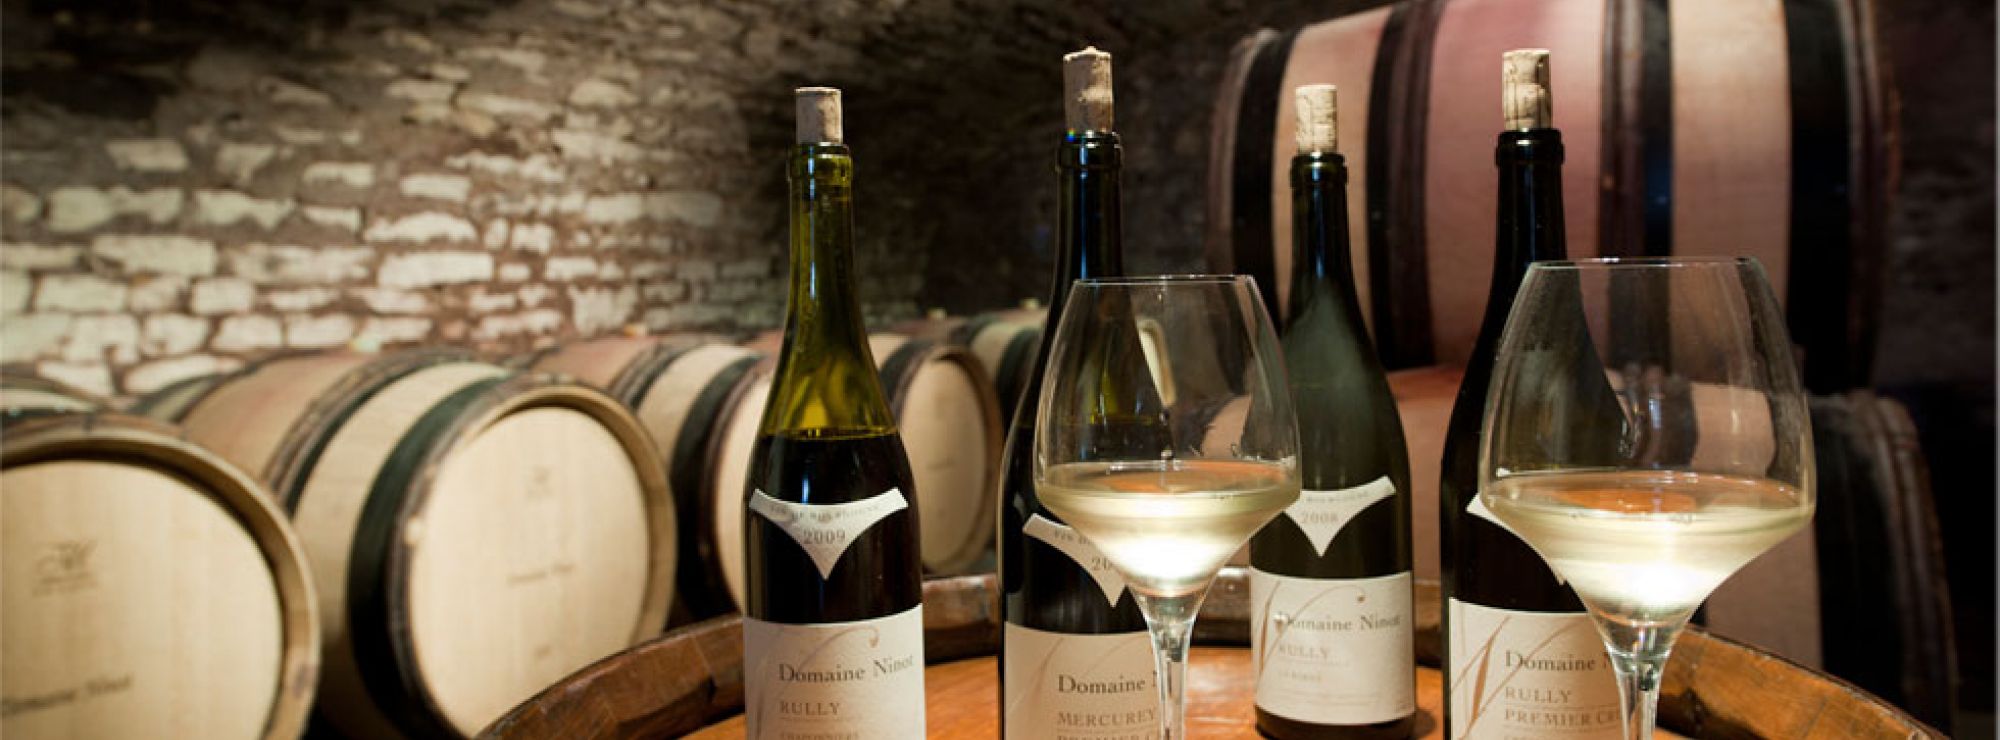 Domaine Ninot Wines